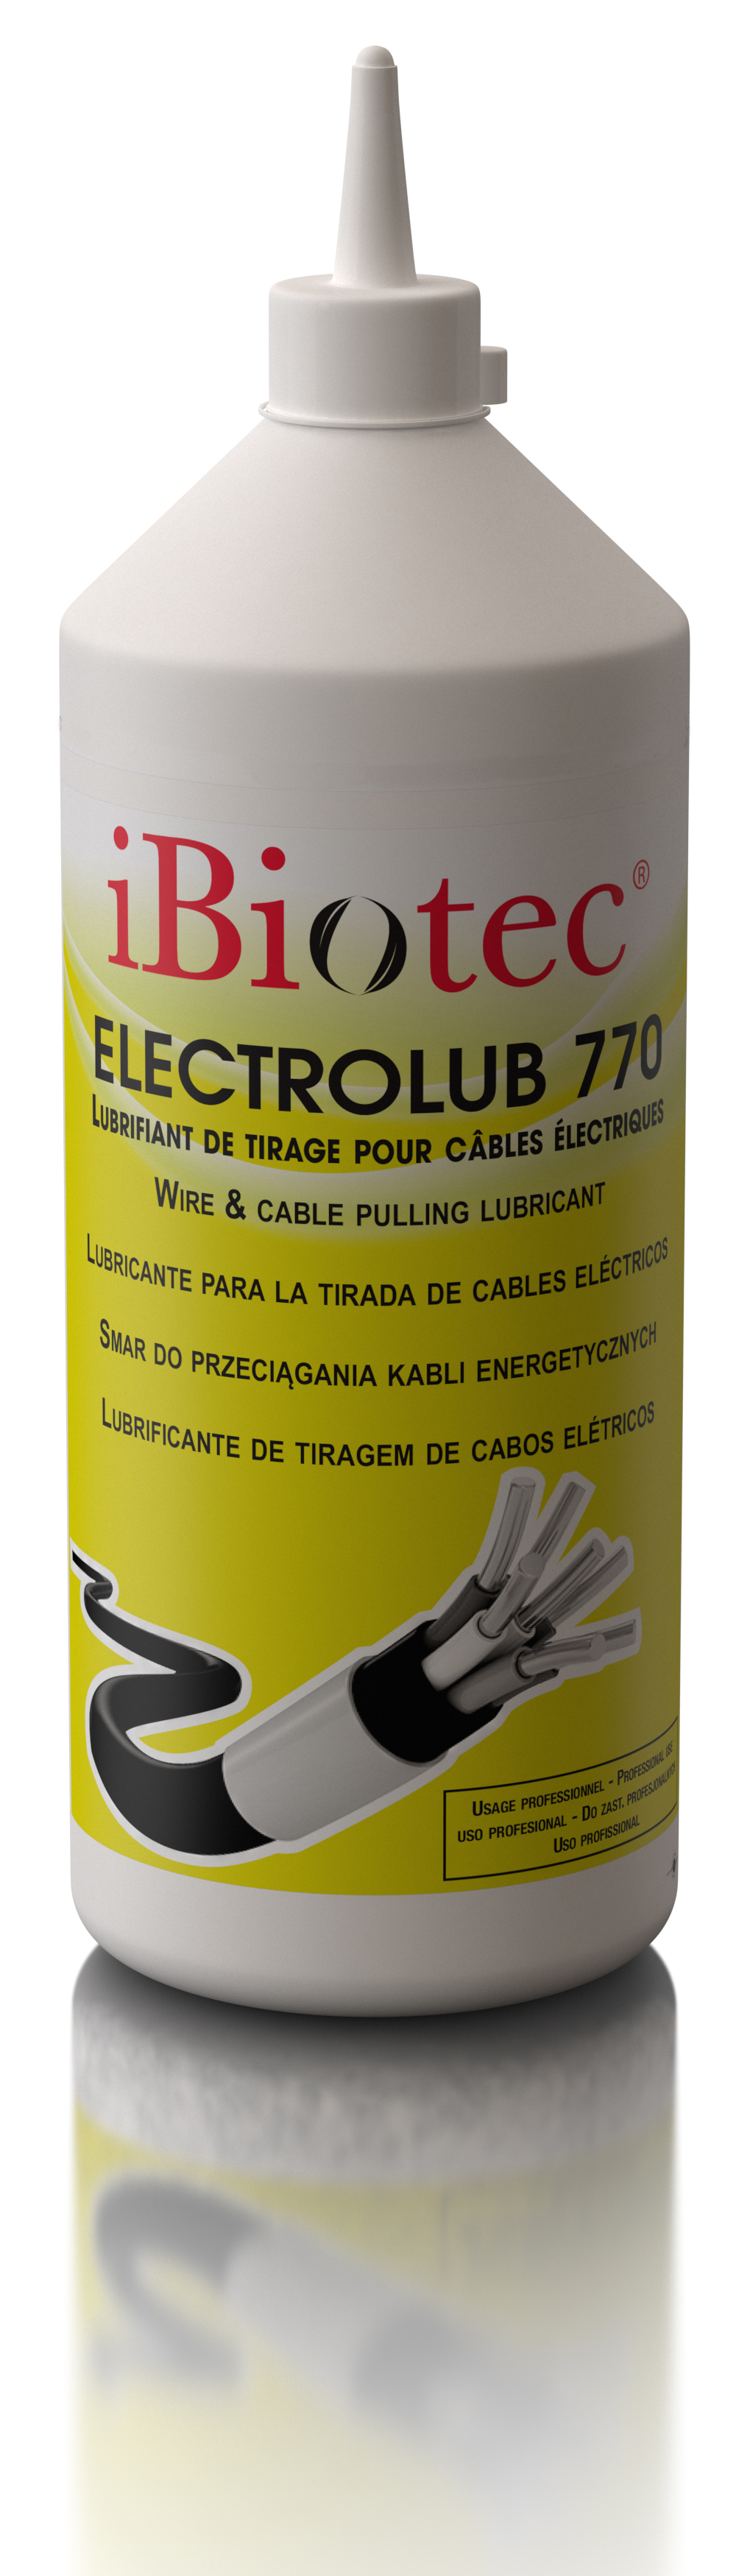 ELECTROLUB 770 Ibiotec Lubrificante em gel para tiragem de cabos elétricos e telecomunicações.  todas as condutas, bainhas e tubos. Coeficiente de deslizamento ideal. Lubrificante para tiragem de cabos Gel para tiragem de cabos Massa para tiragem de cabos Tiragem de cabos elétricos Tiragem de fios elétricos Lubrificante para tiragem de fios.